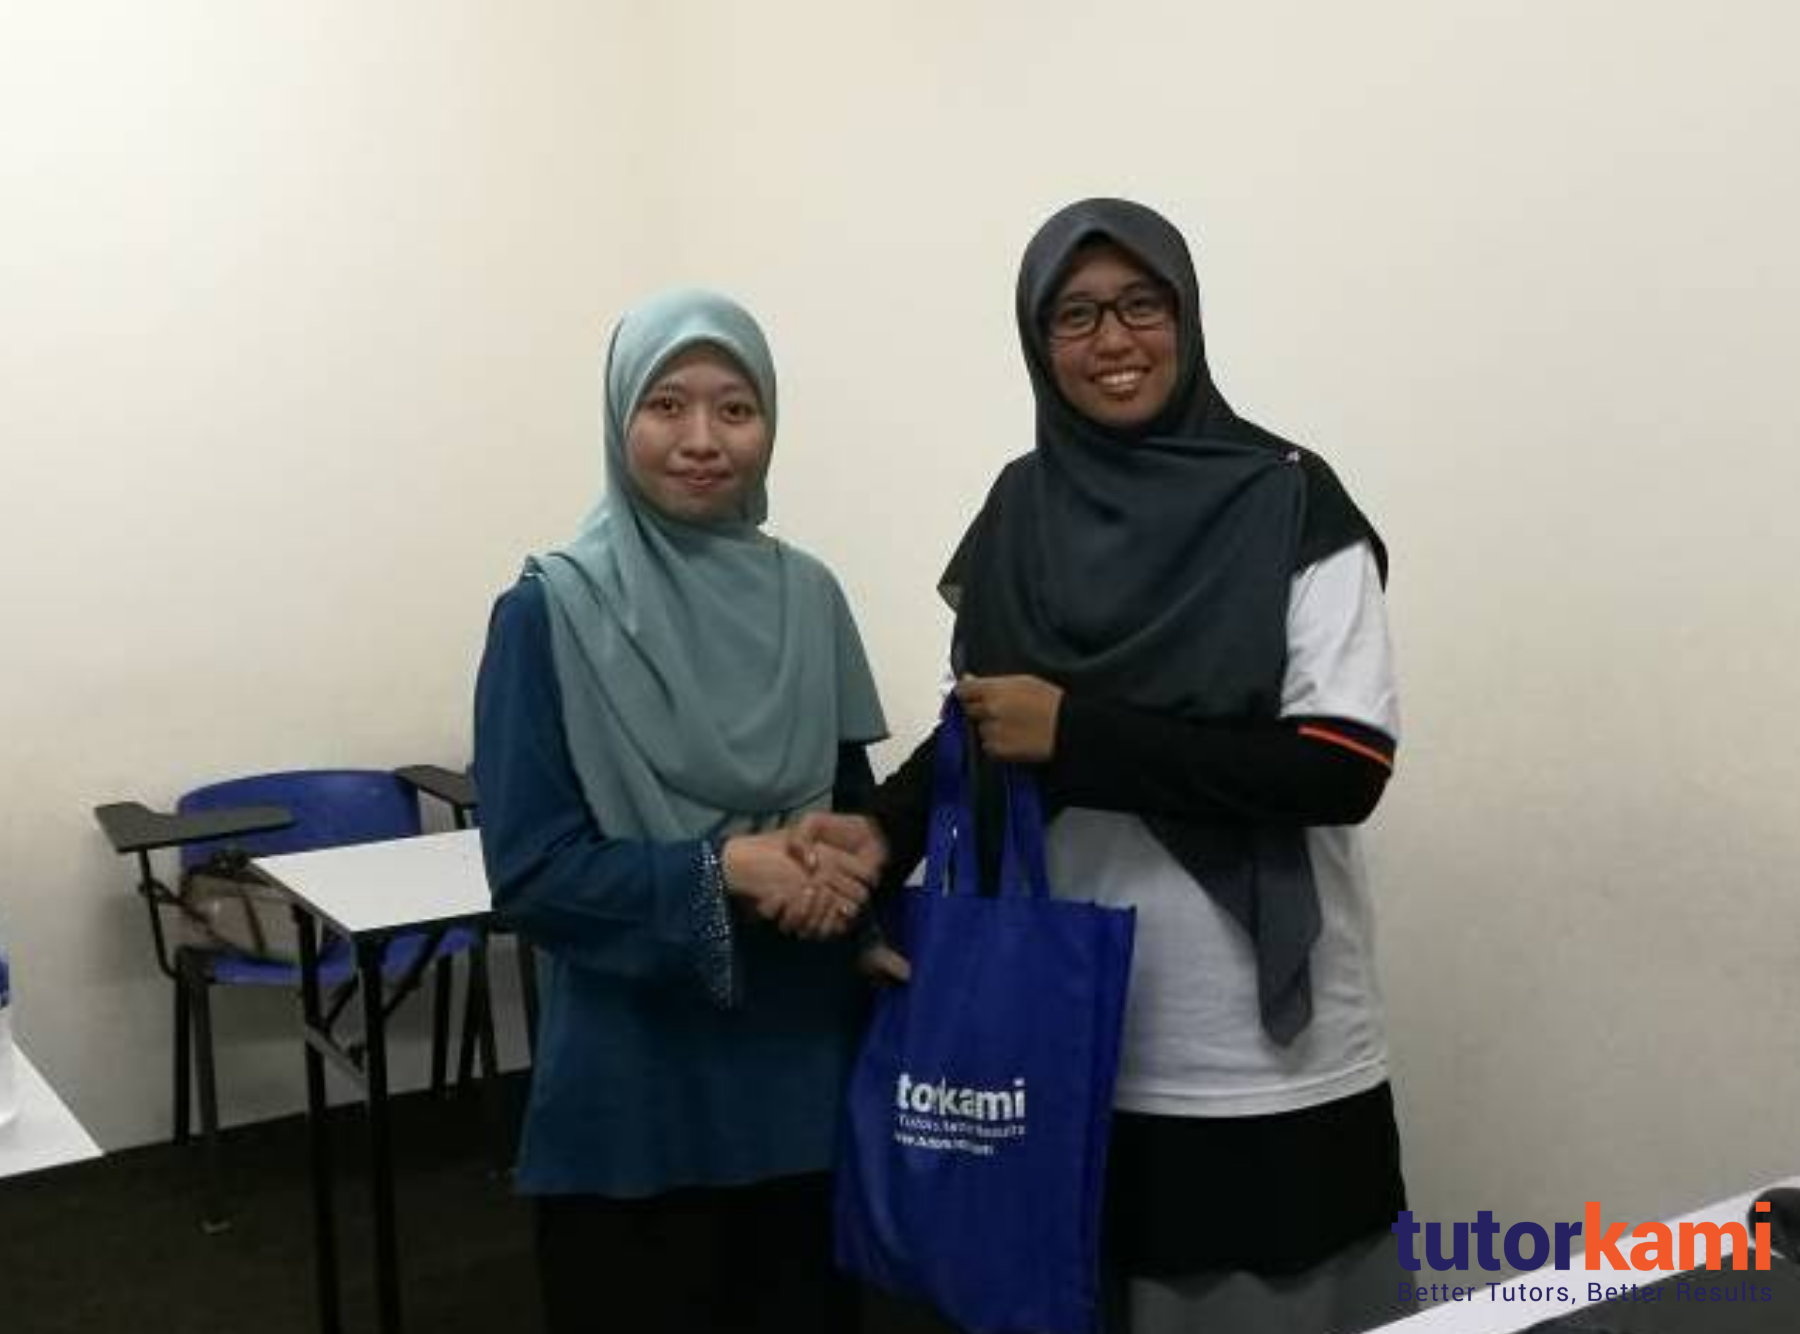 TutorKami of the month, Cikgu Nor Affidah menerima hadiah istimewa dari TutorKami